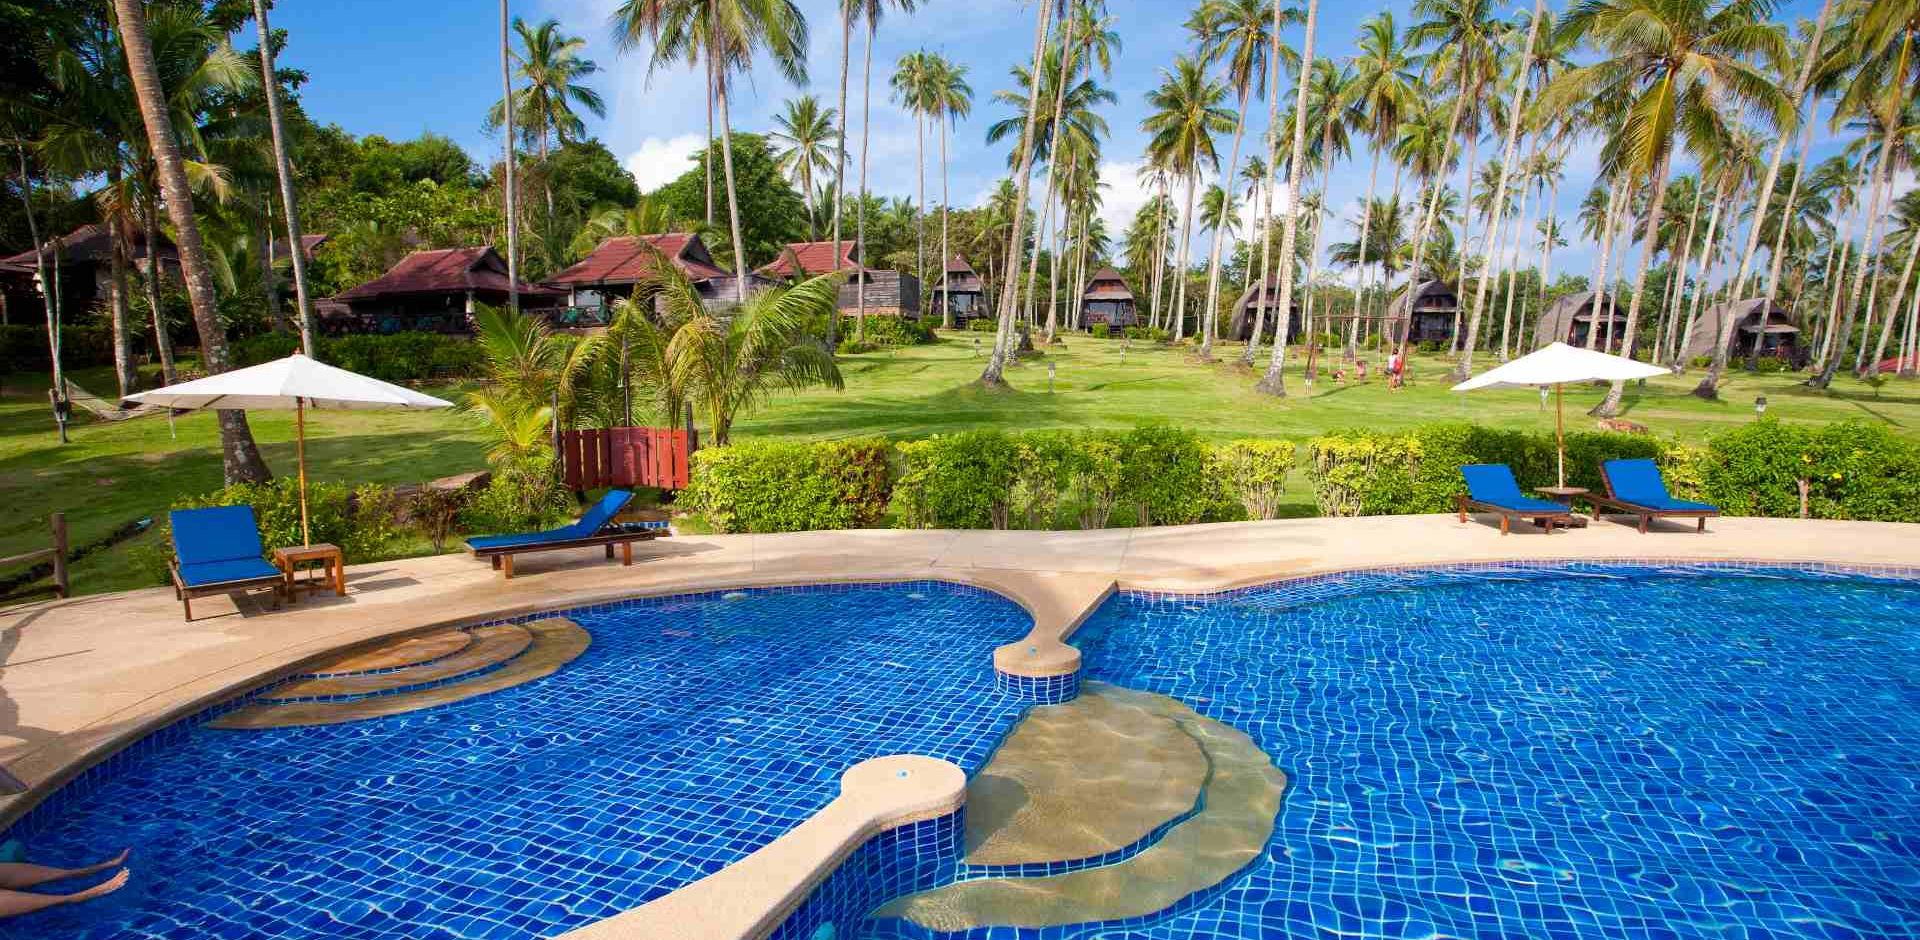 Thailand, Koh Kood, Koh Kood Beach Resort, Pool View